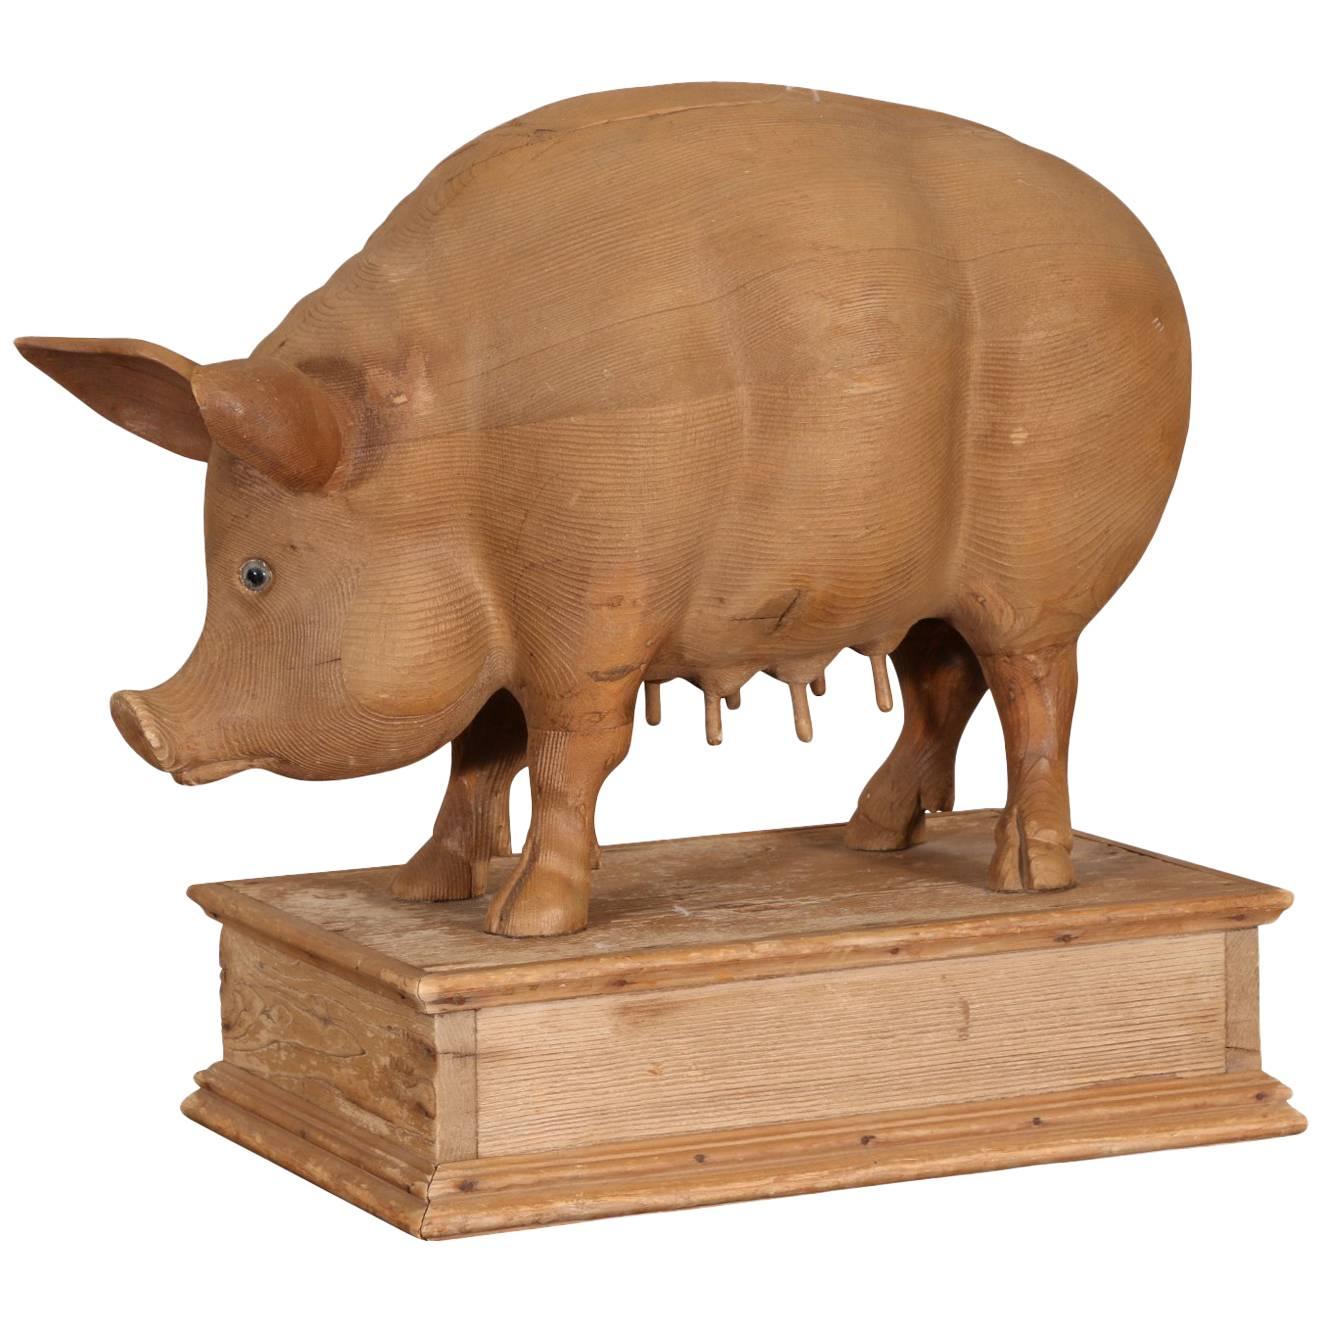 Carved Pine Pig Sculpture